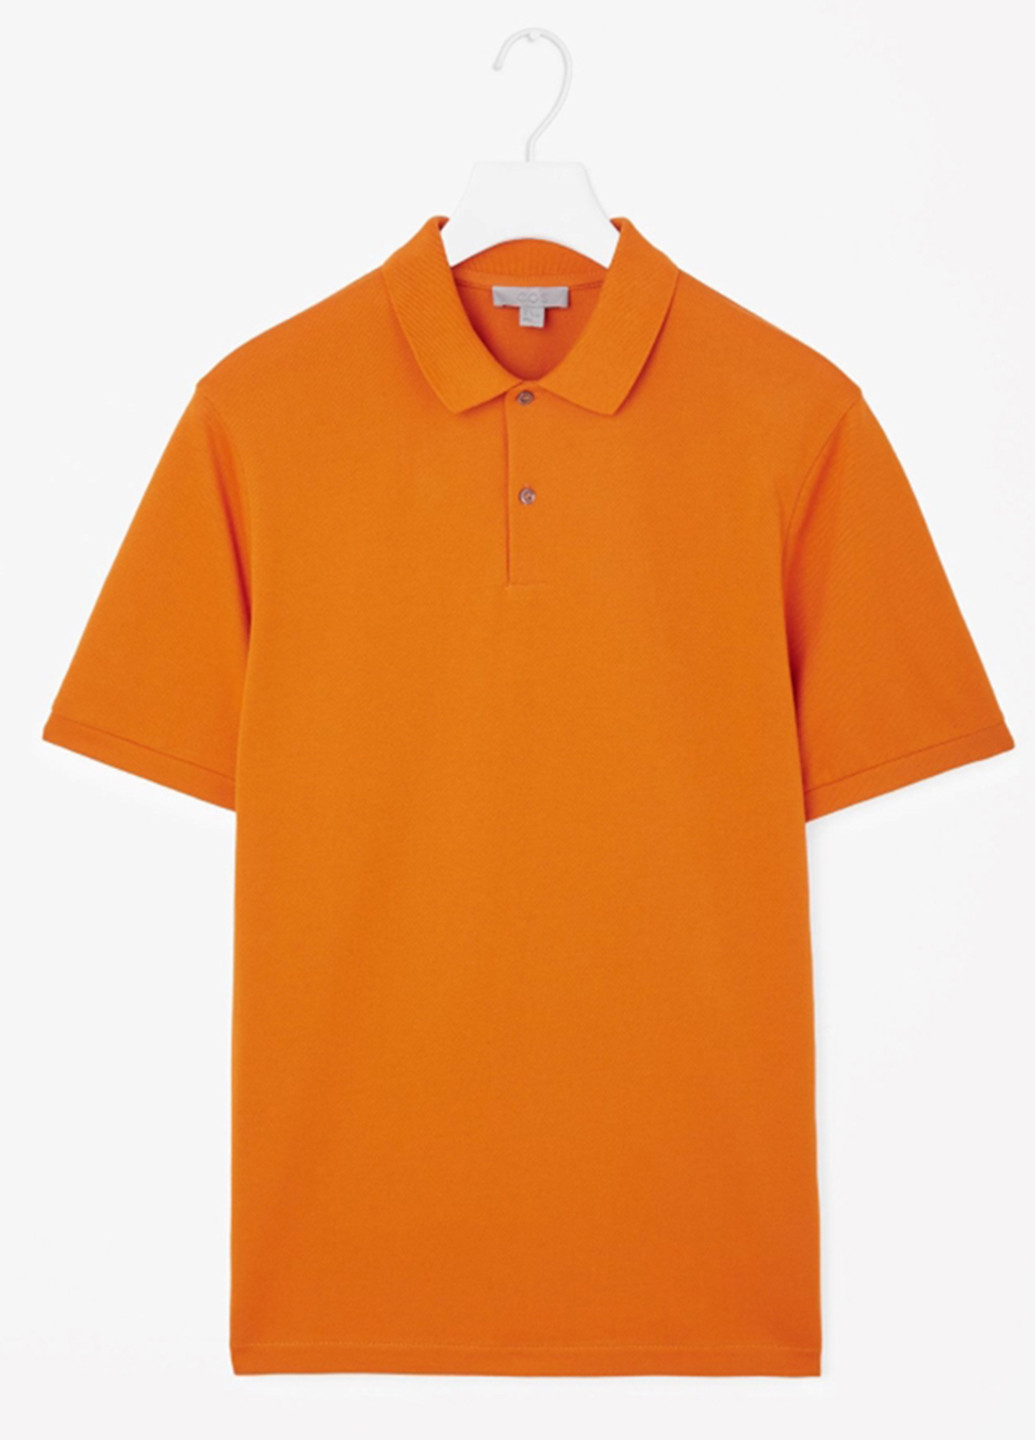 Оранжевая футболка-поло для мужчин Cos однотонная